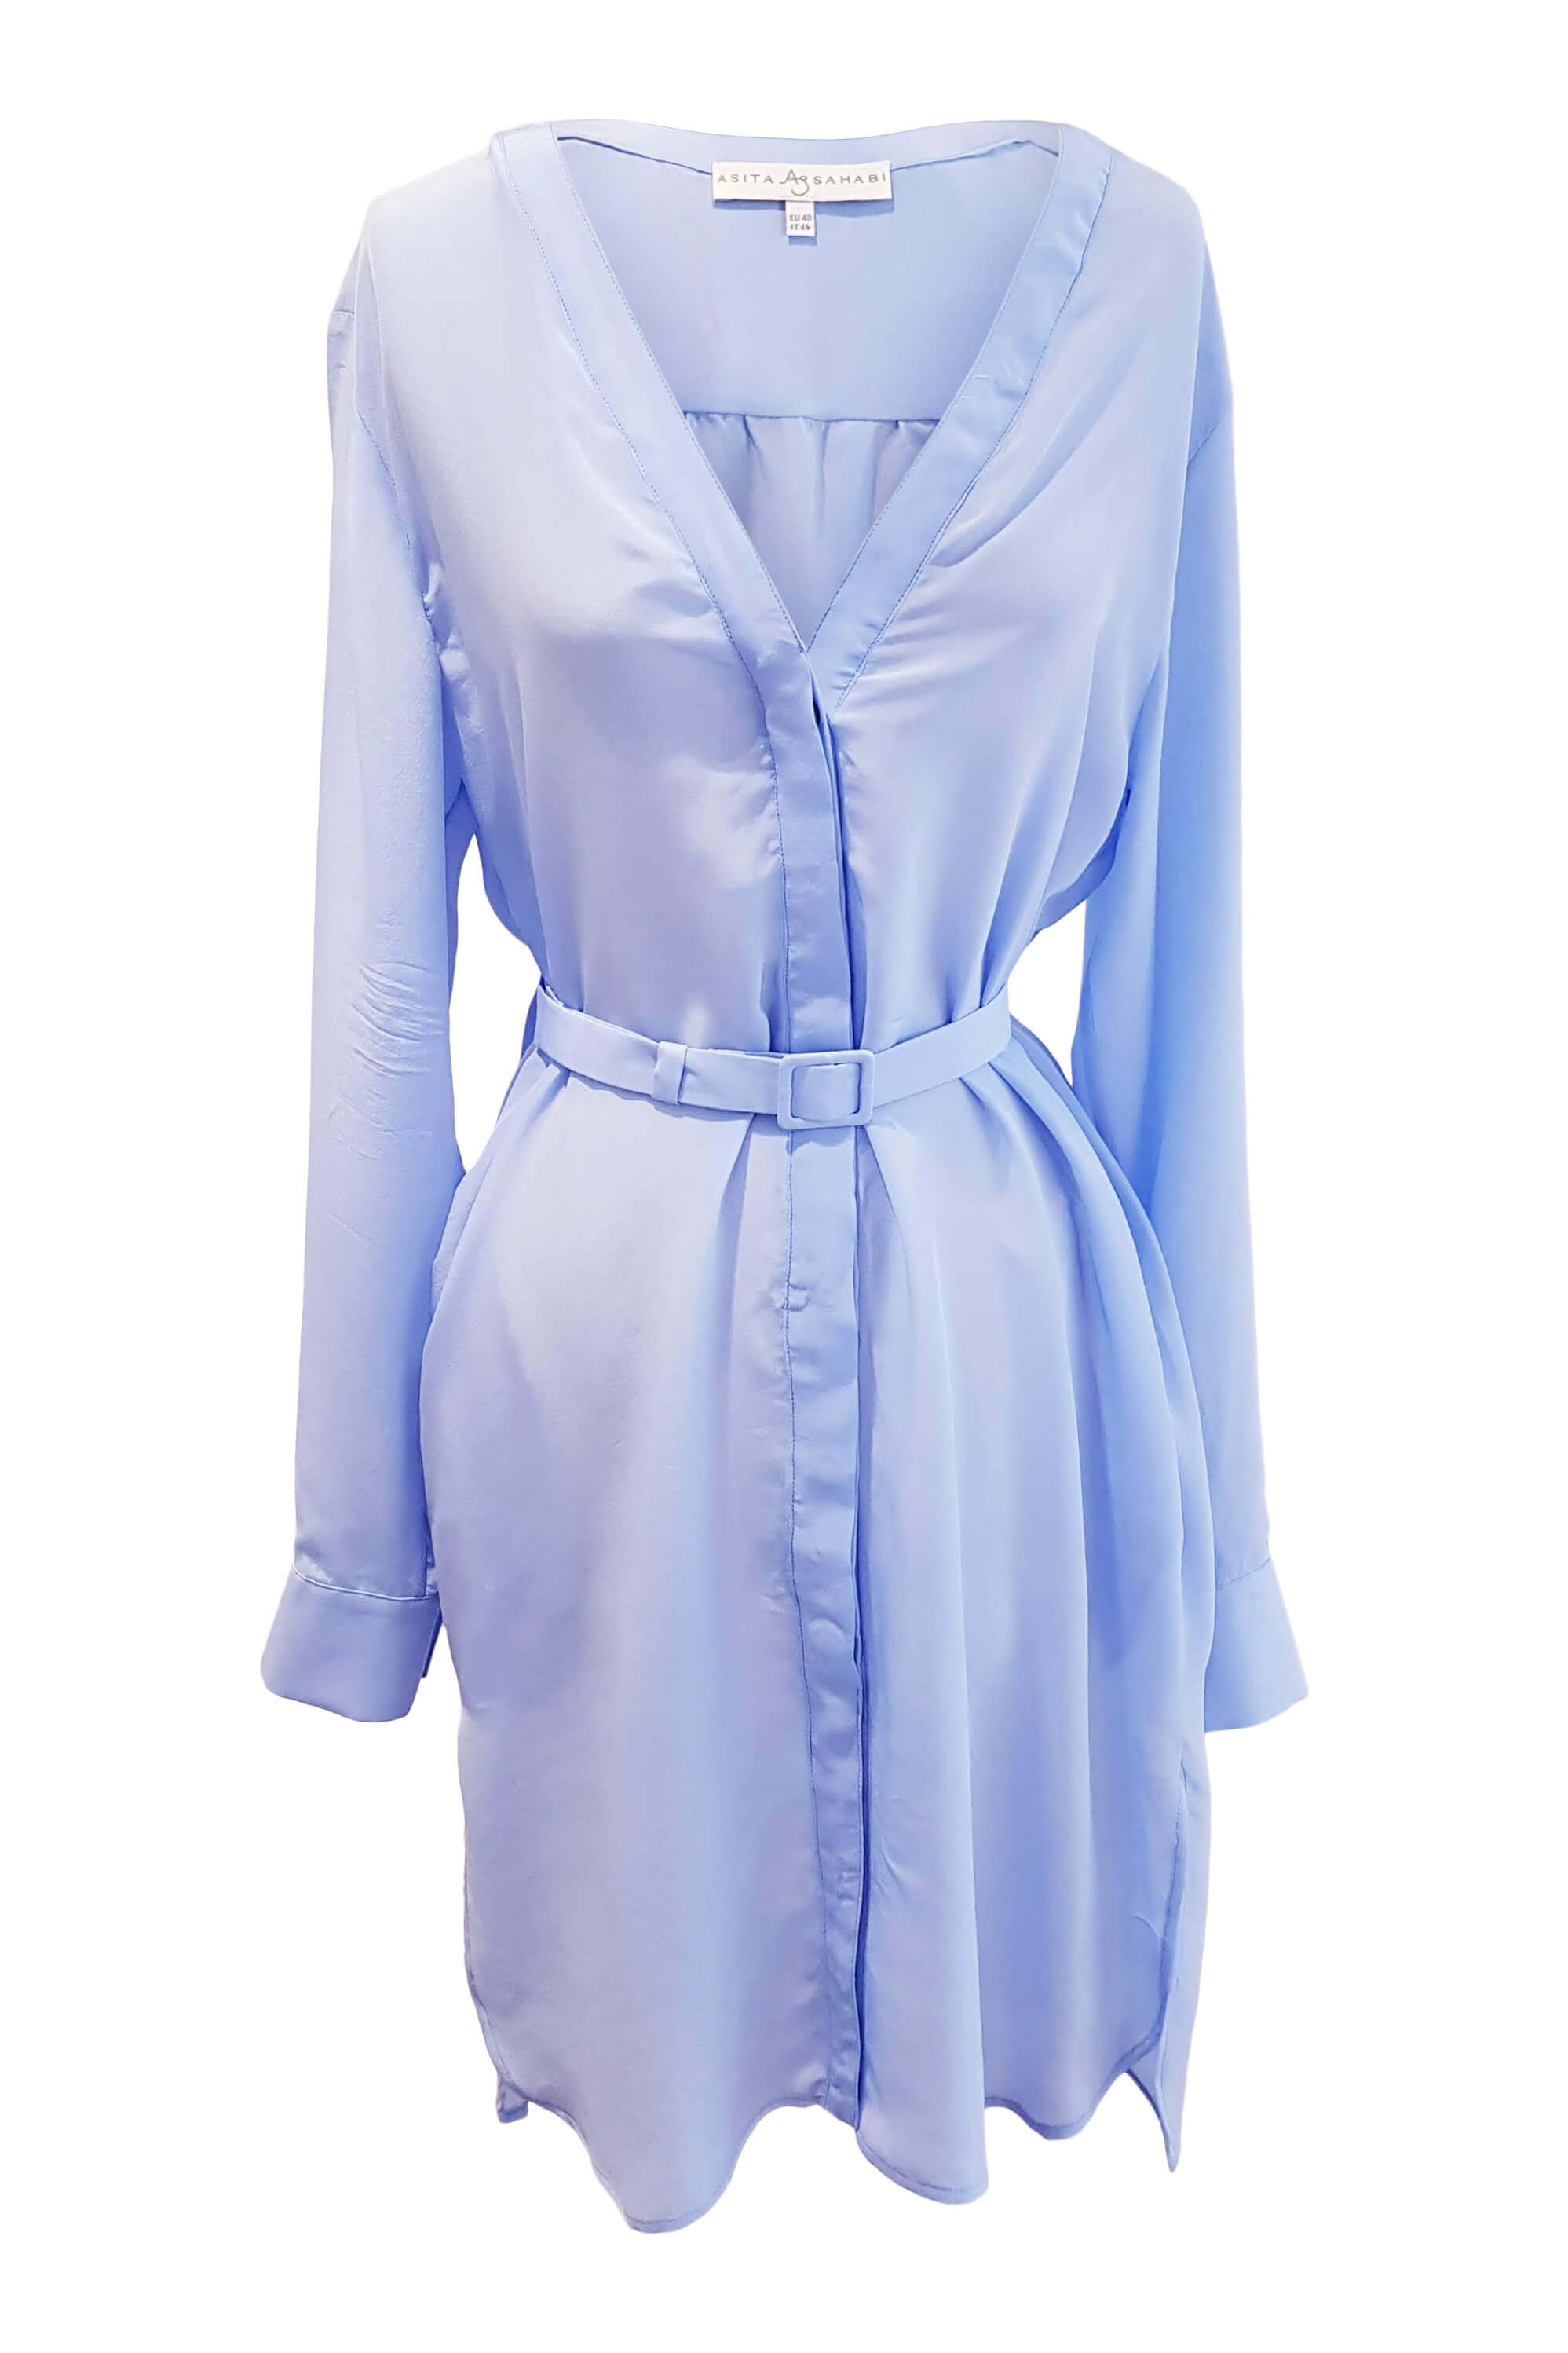 blue shirtwaist dress